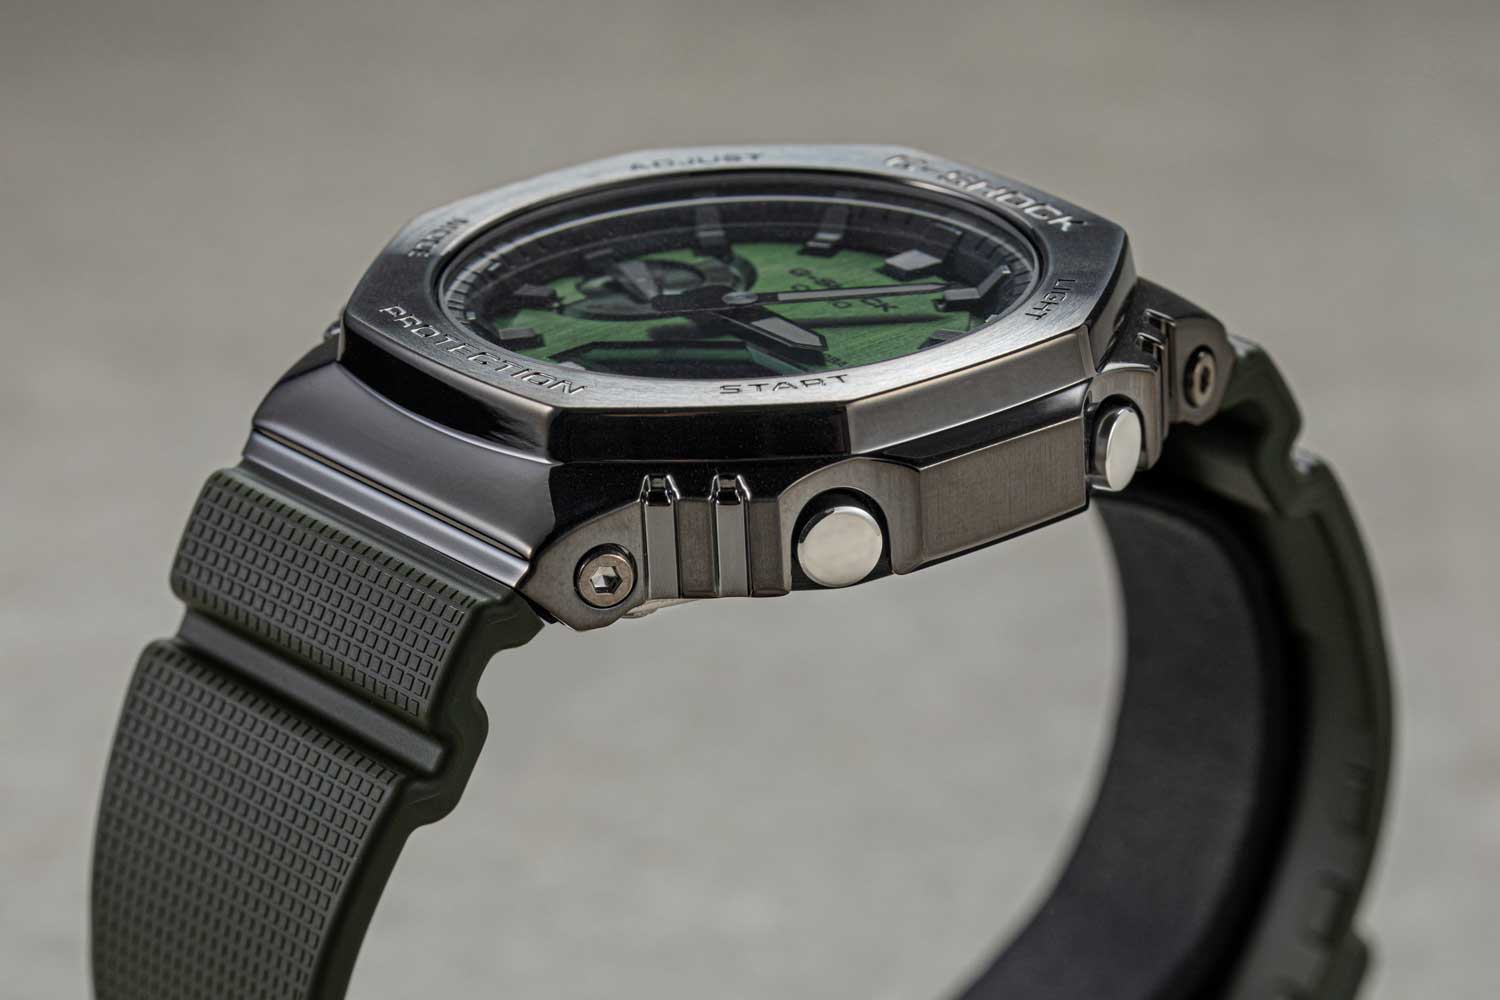 G-Shock 2100 chiếc đồng hồ đỉnh cao của thiết kế